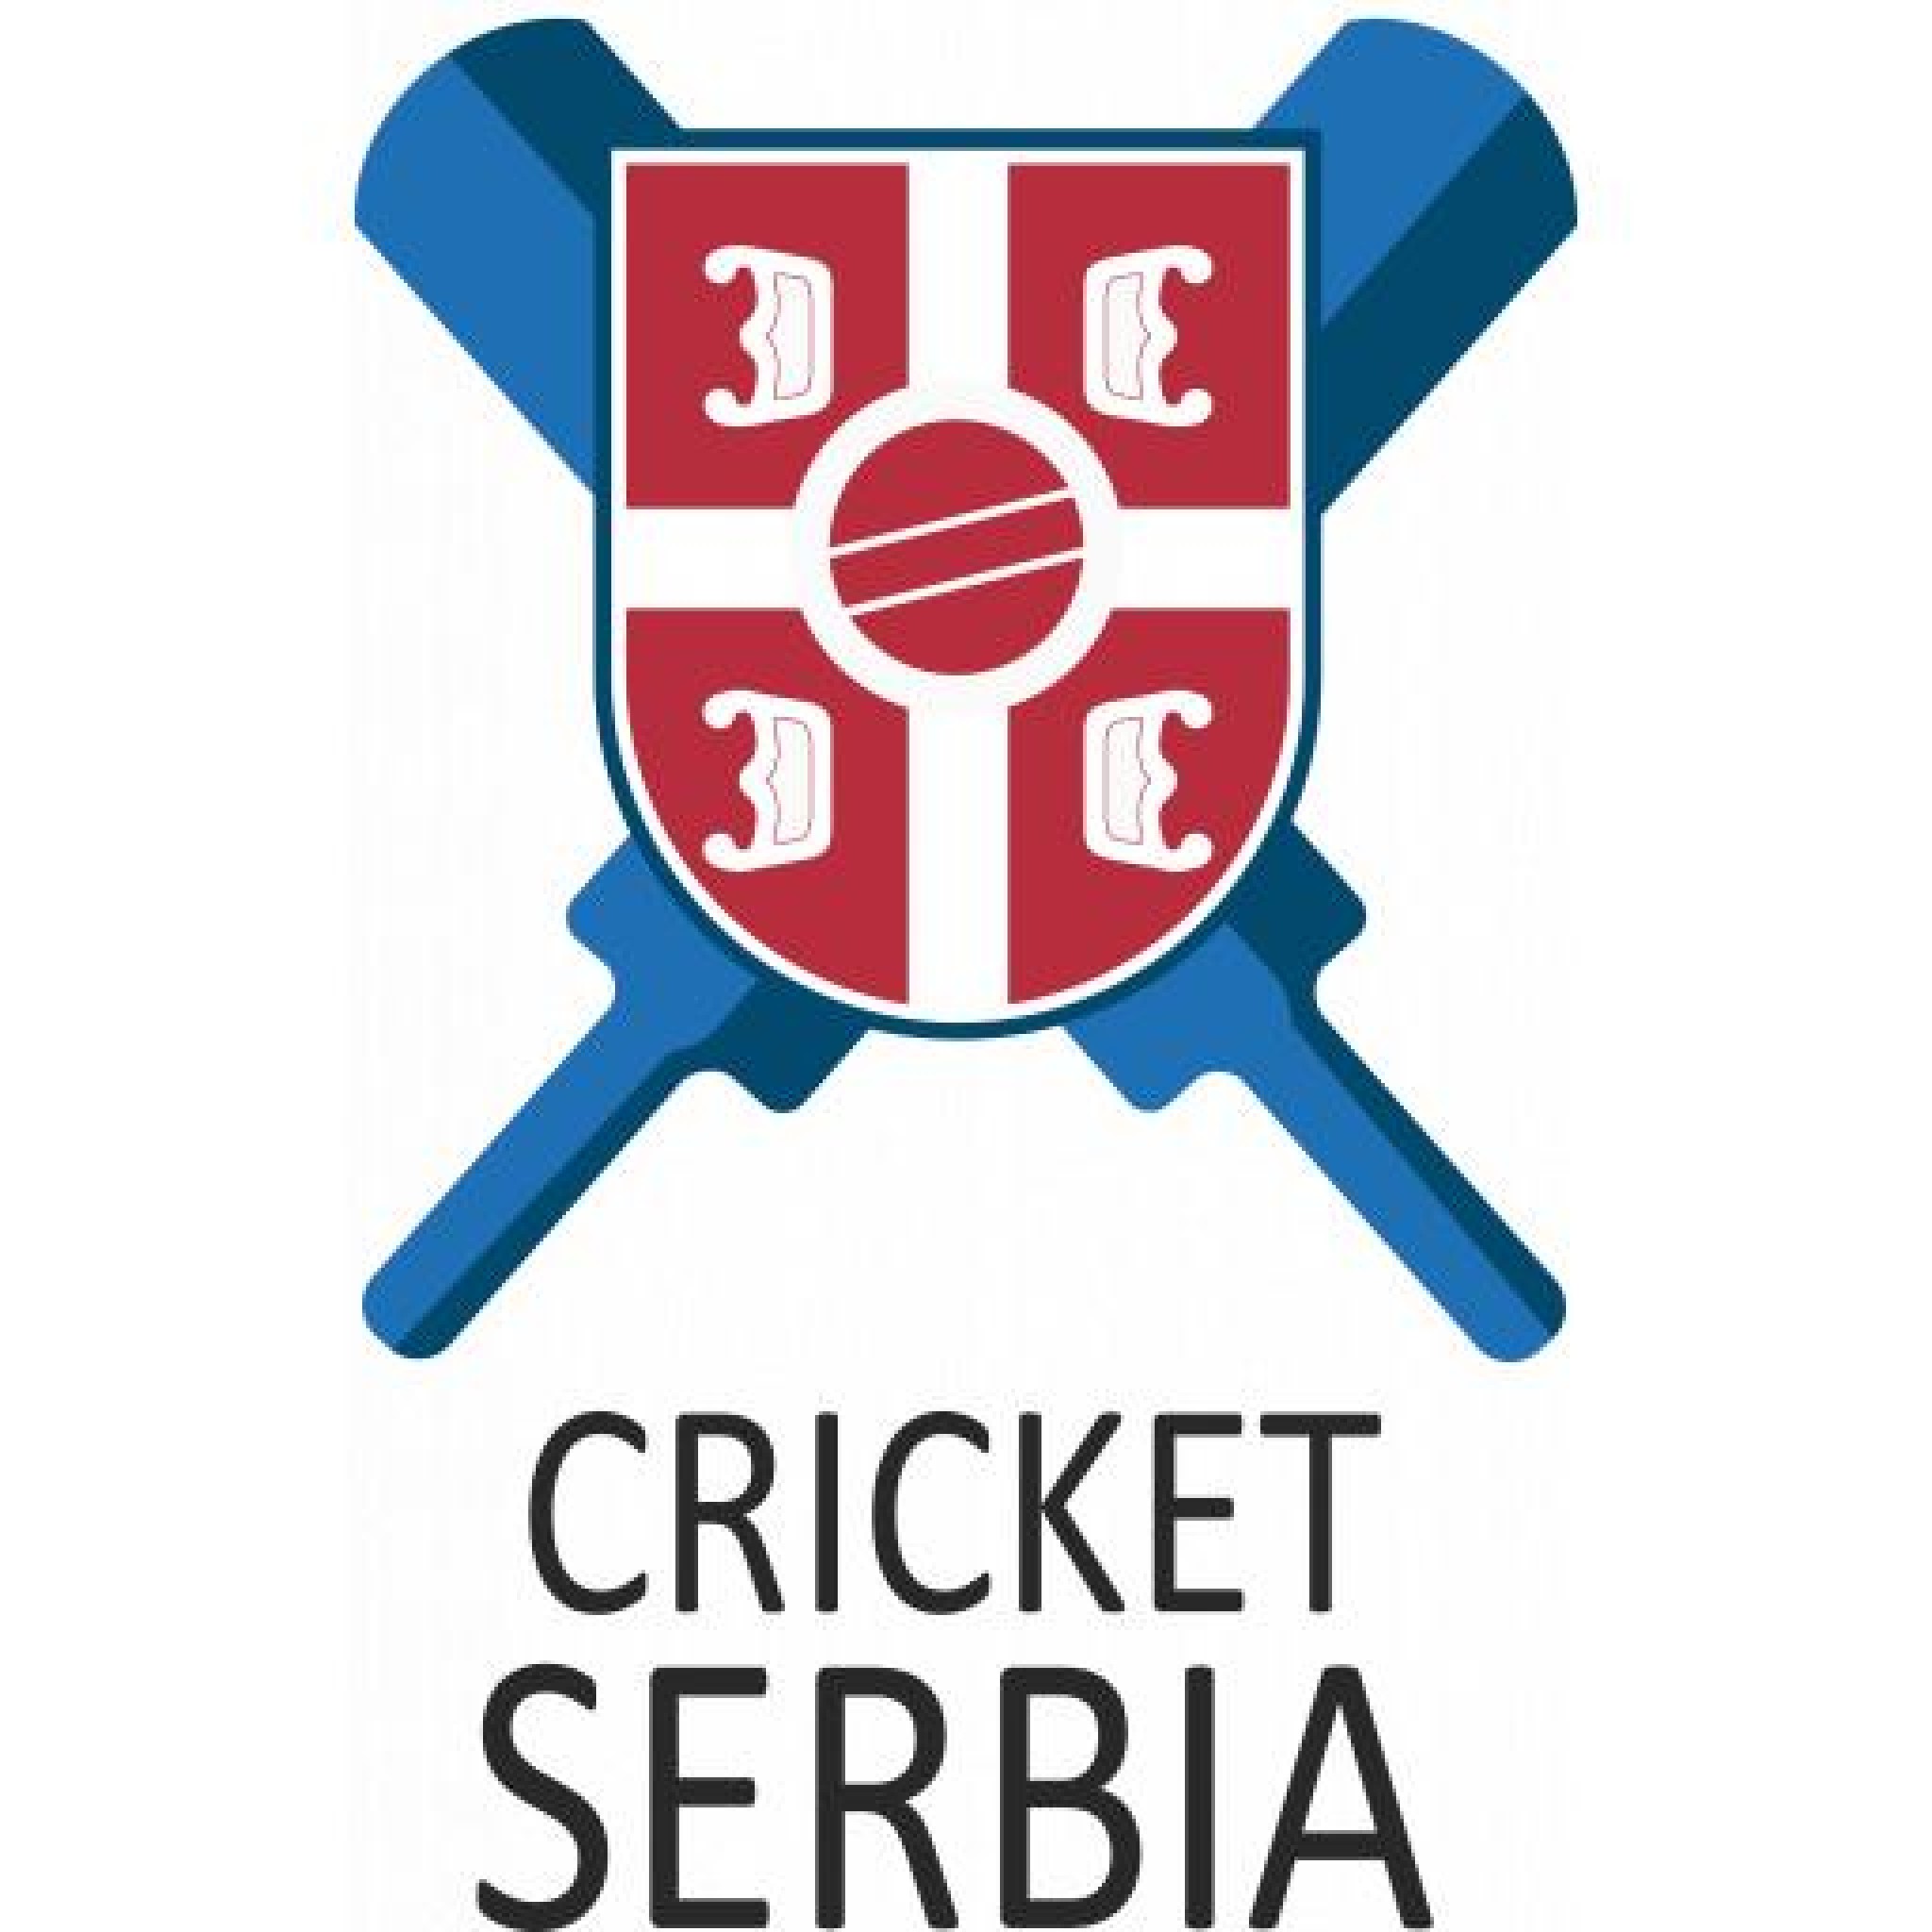 Cricket Serbia CC.jpg